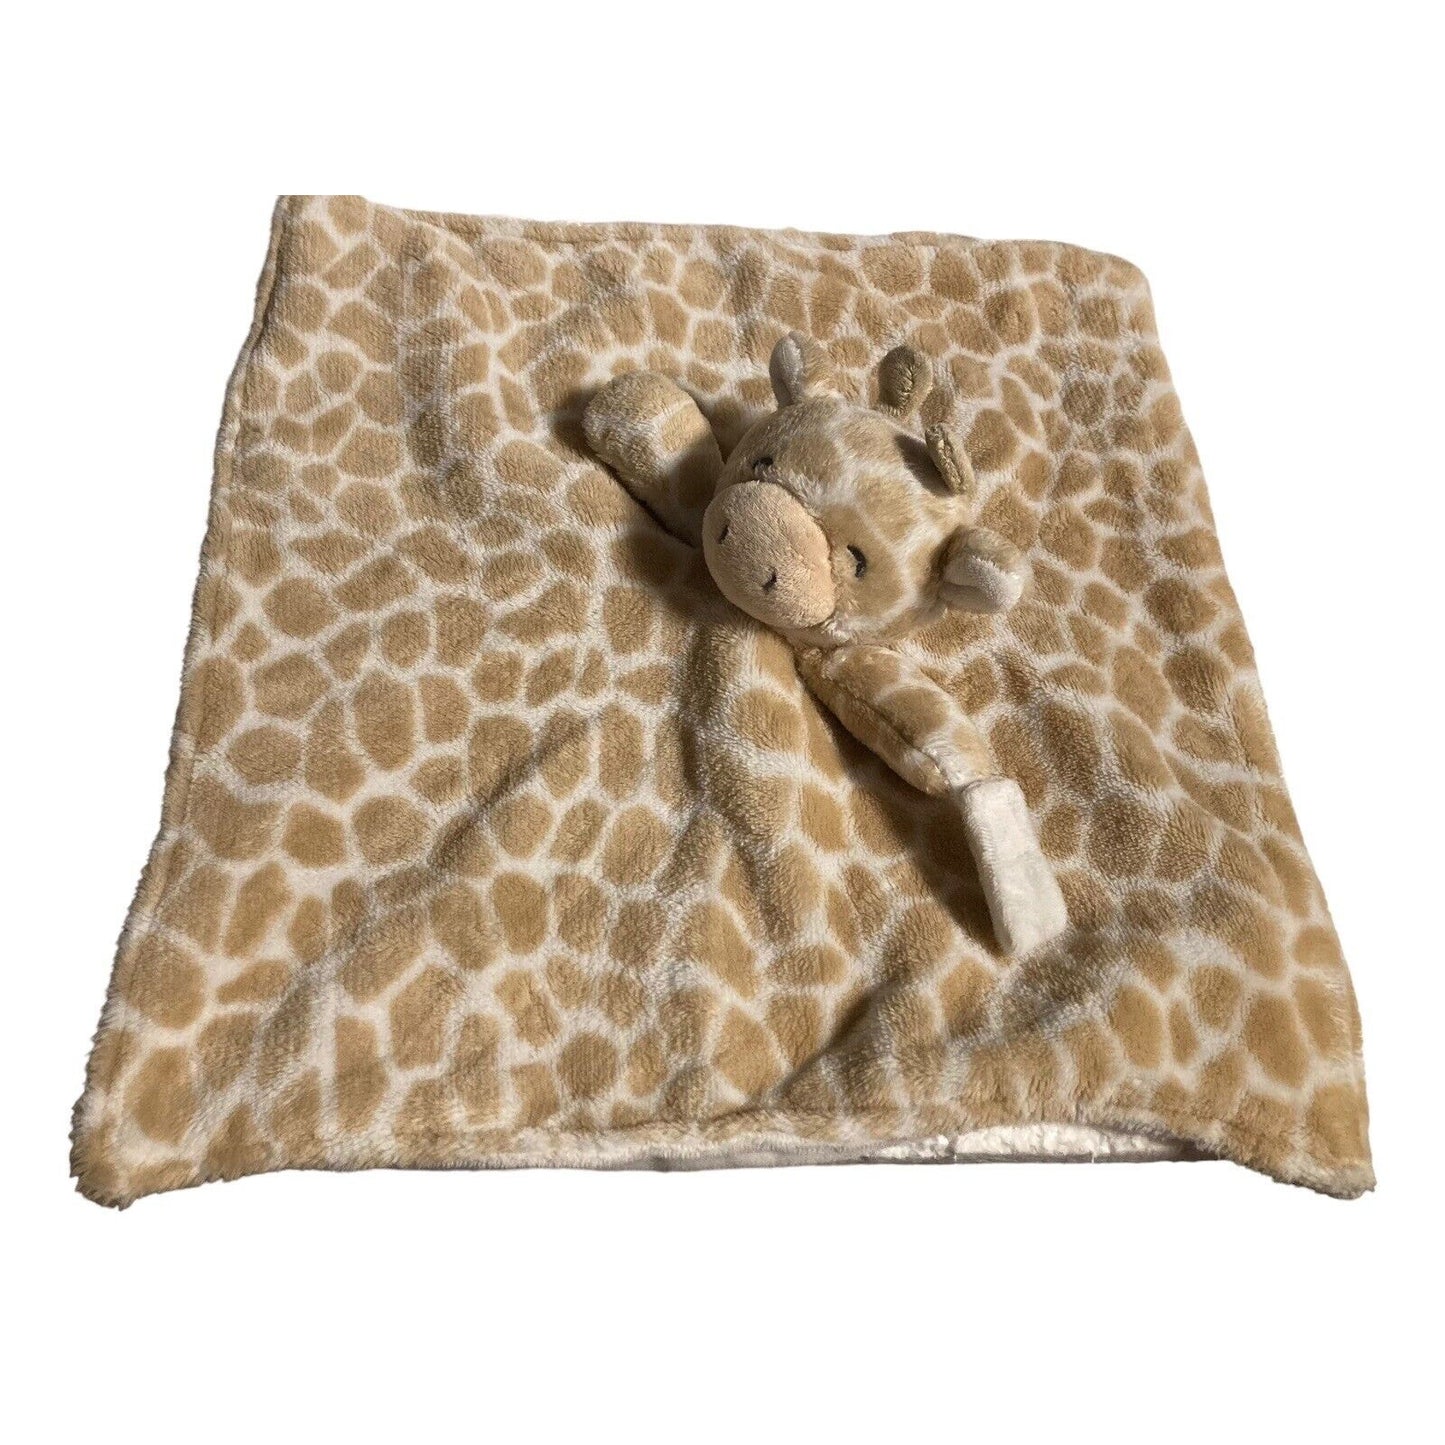 Carter's Giraffe Plush Animal Snuggler Lovey Security Blanket Pacifier Holder